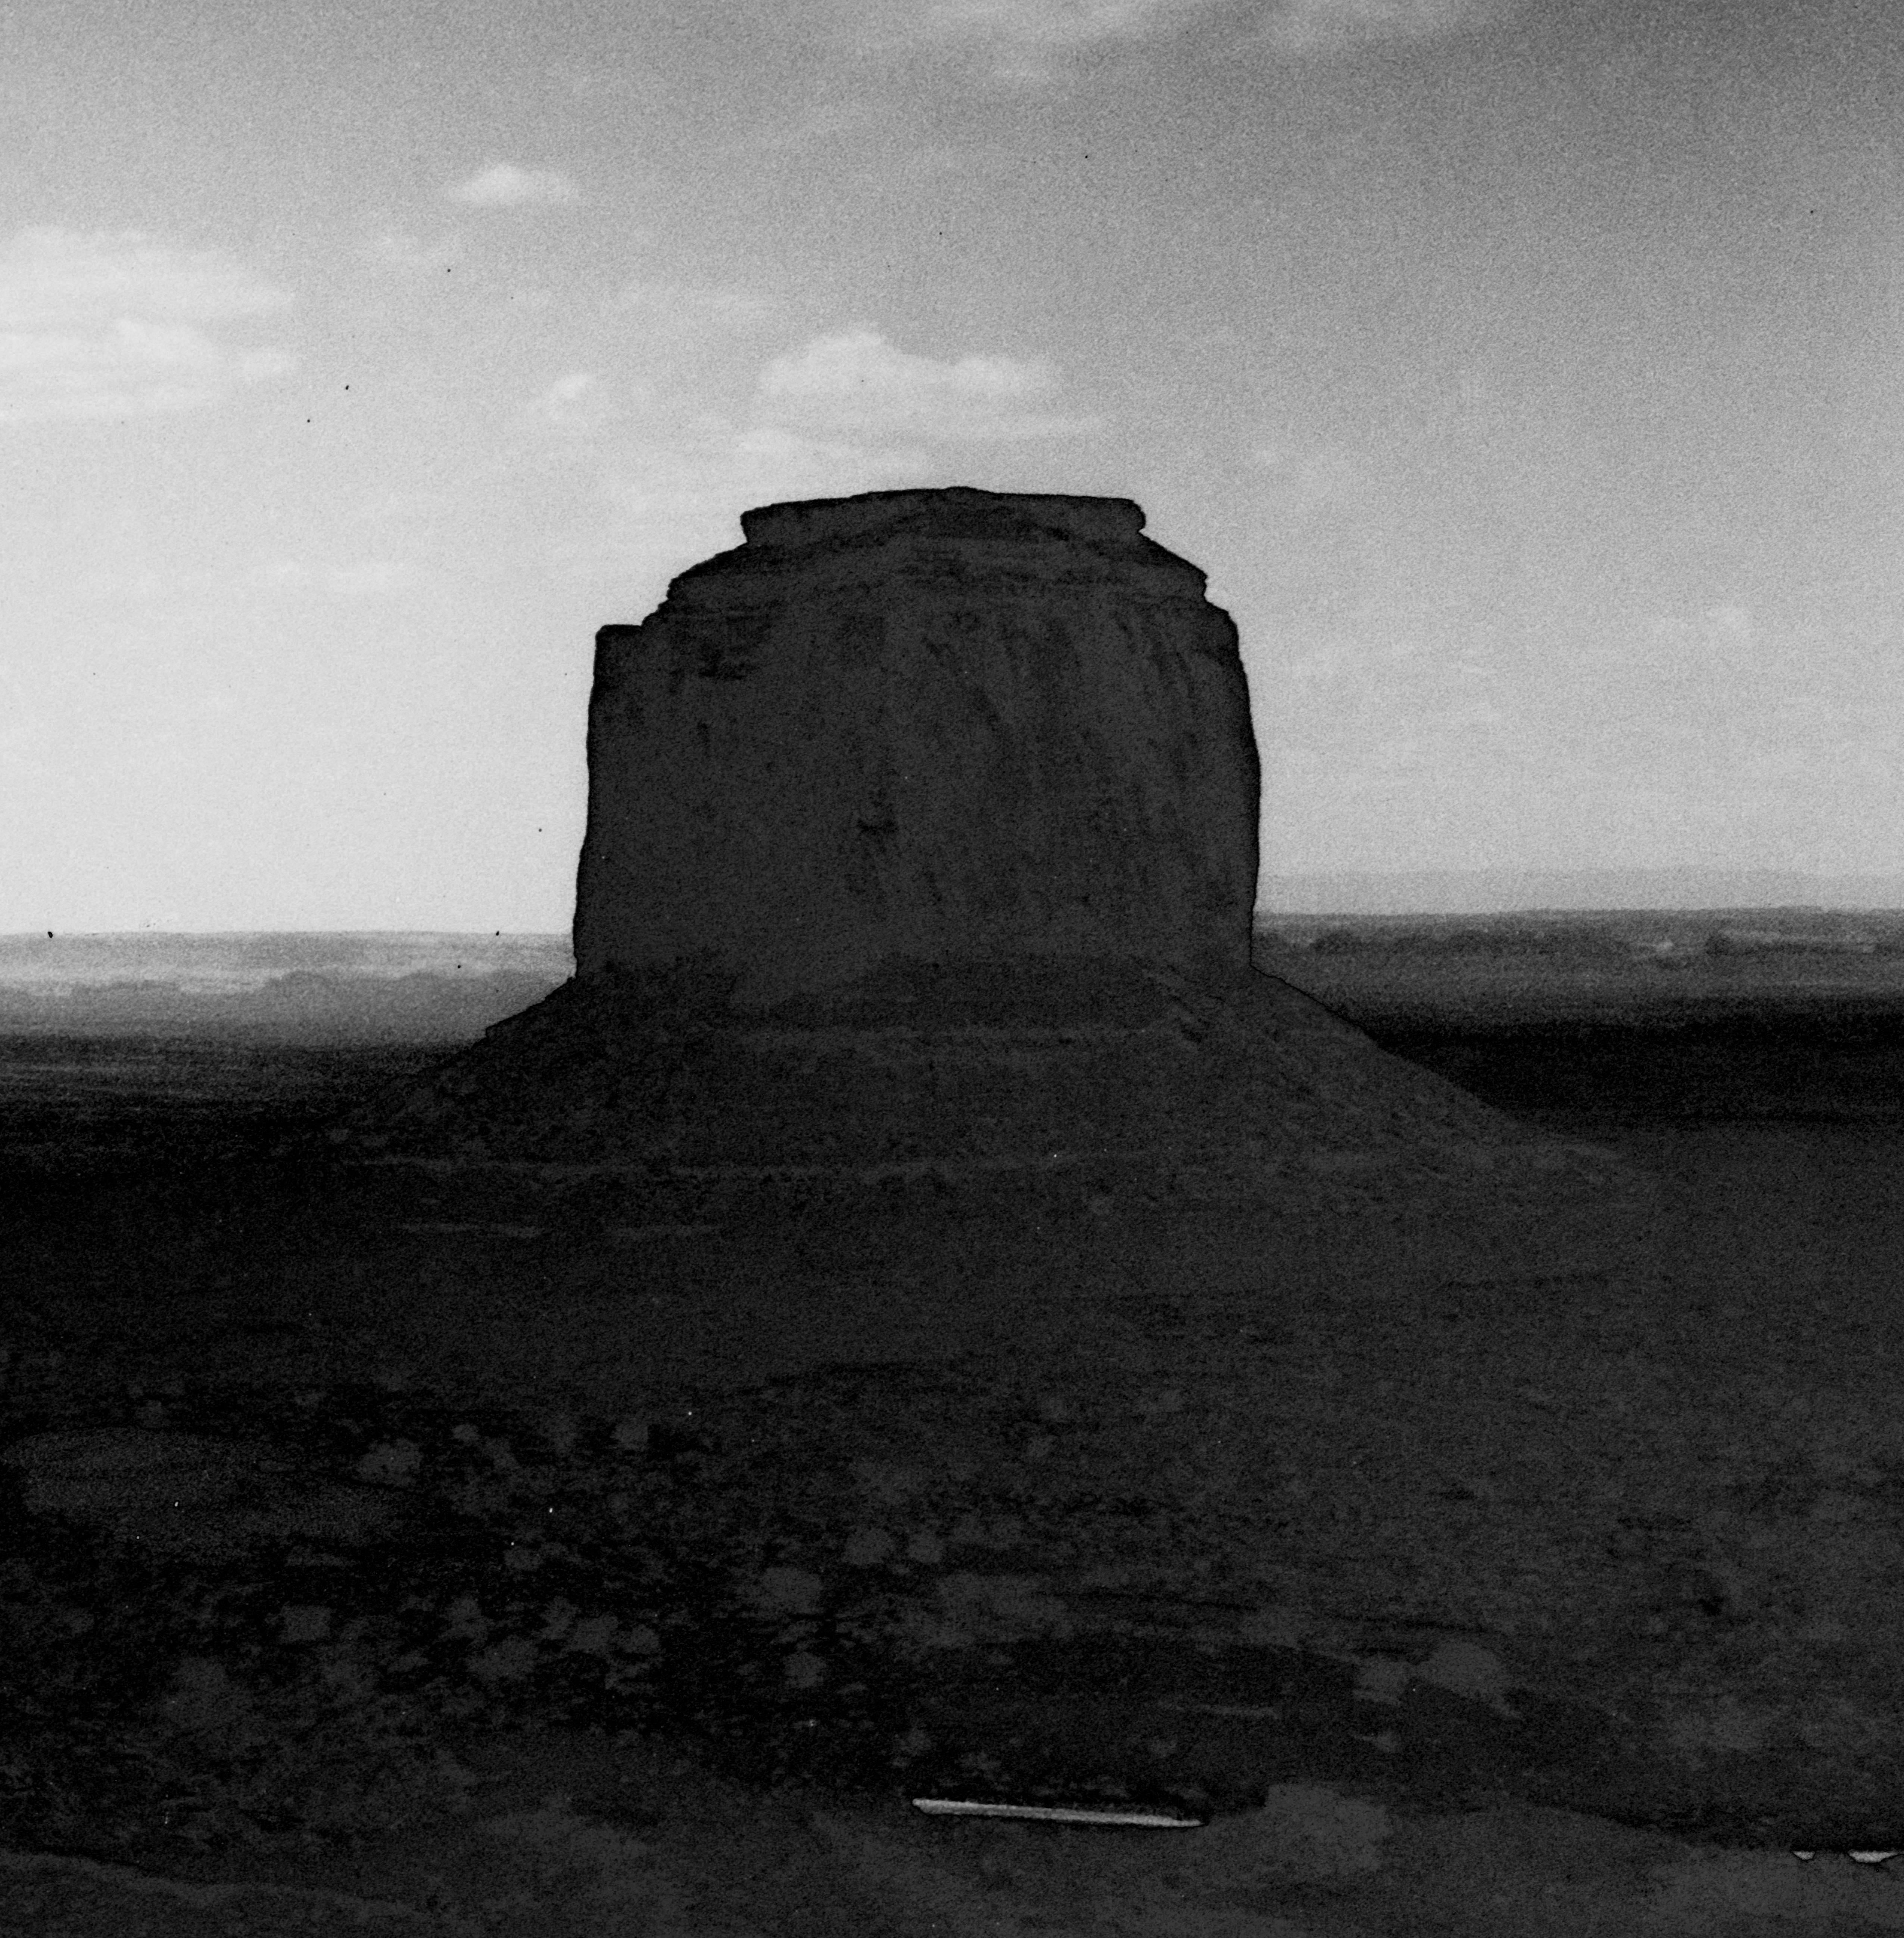 Monument Valley 

Arizona, USA, 2023

Von Limitierte Auflage von 20.

Das Foto wurde mit einer Linhof-Großformatkamera aus der Mitte des letzten Jahrhunderts aufgenommen.

Gedruckt auf archivfähigem Hahnemühle Photo Rag Baryta Papier. Signiert auf